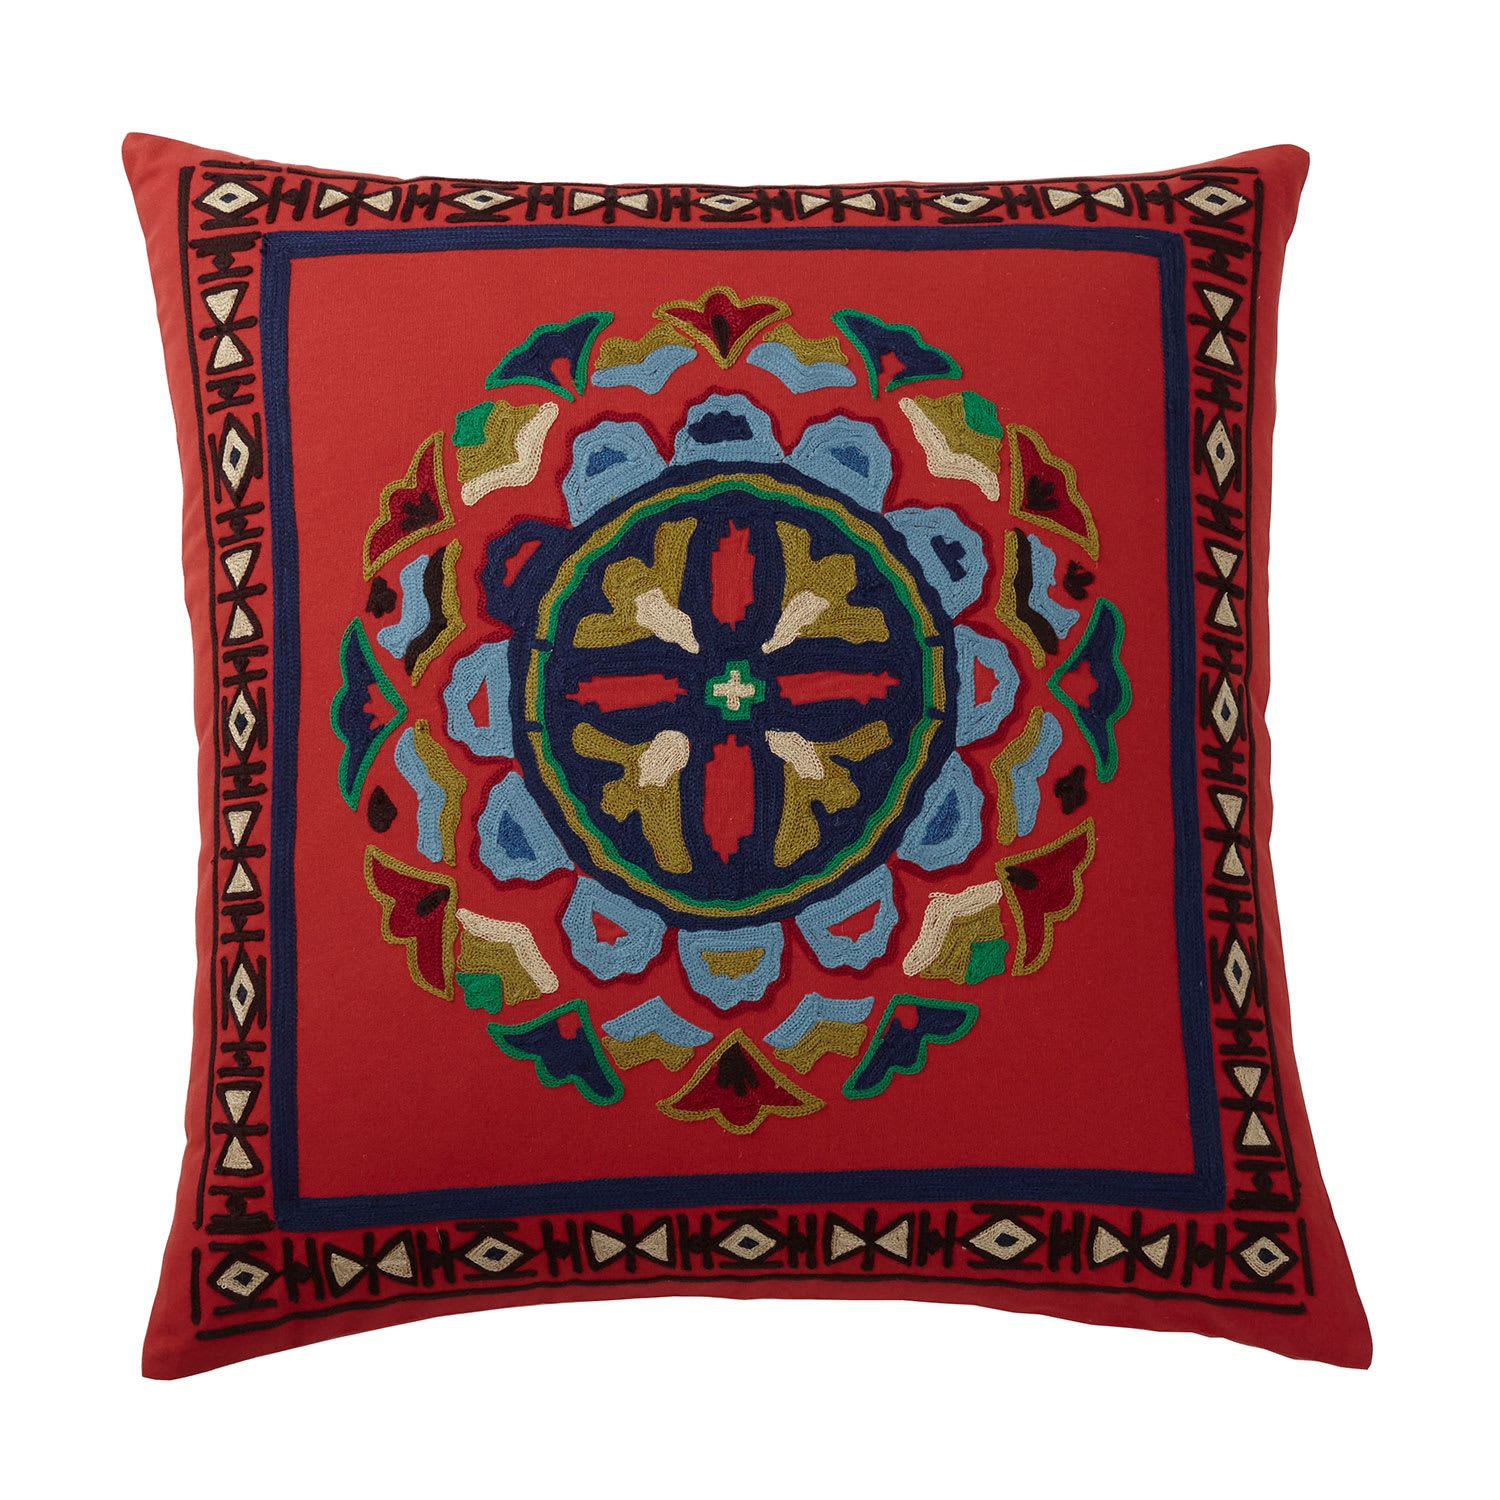 Multicolored Suzani Embroidered Pillow Cover - Suzani